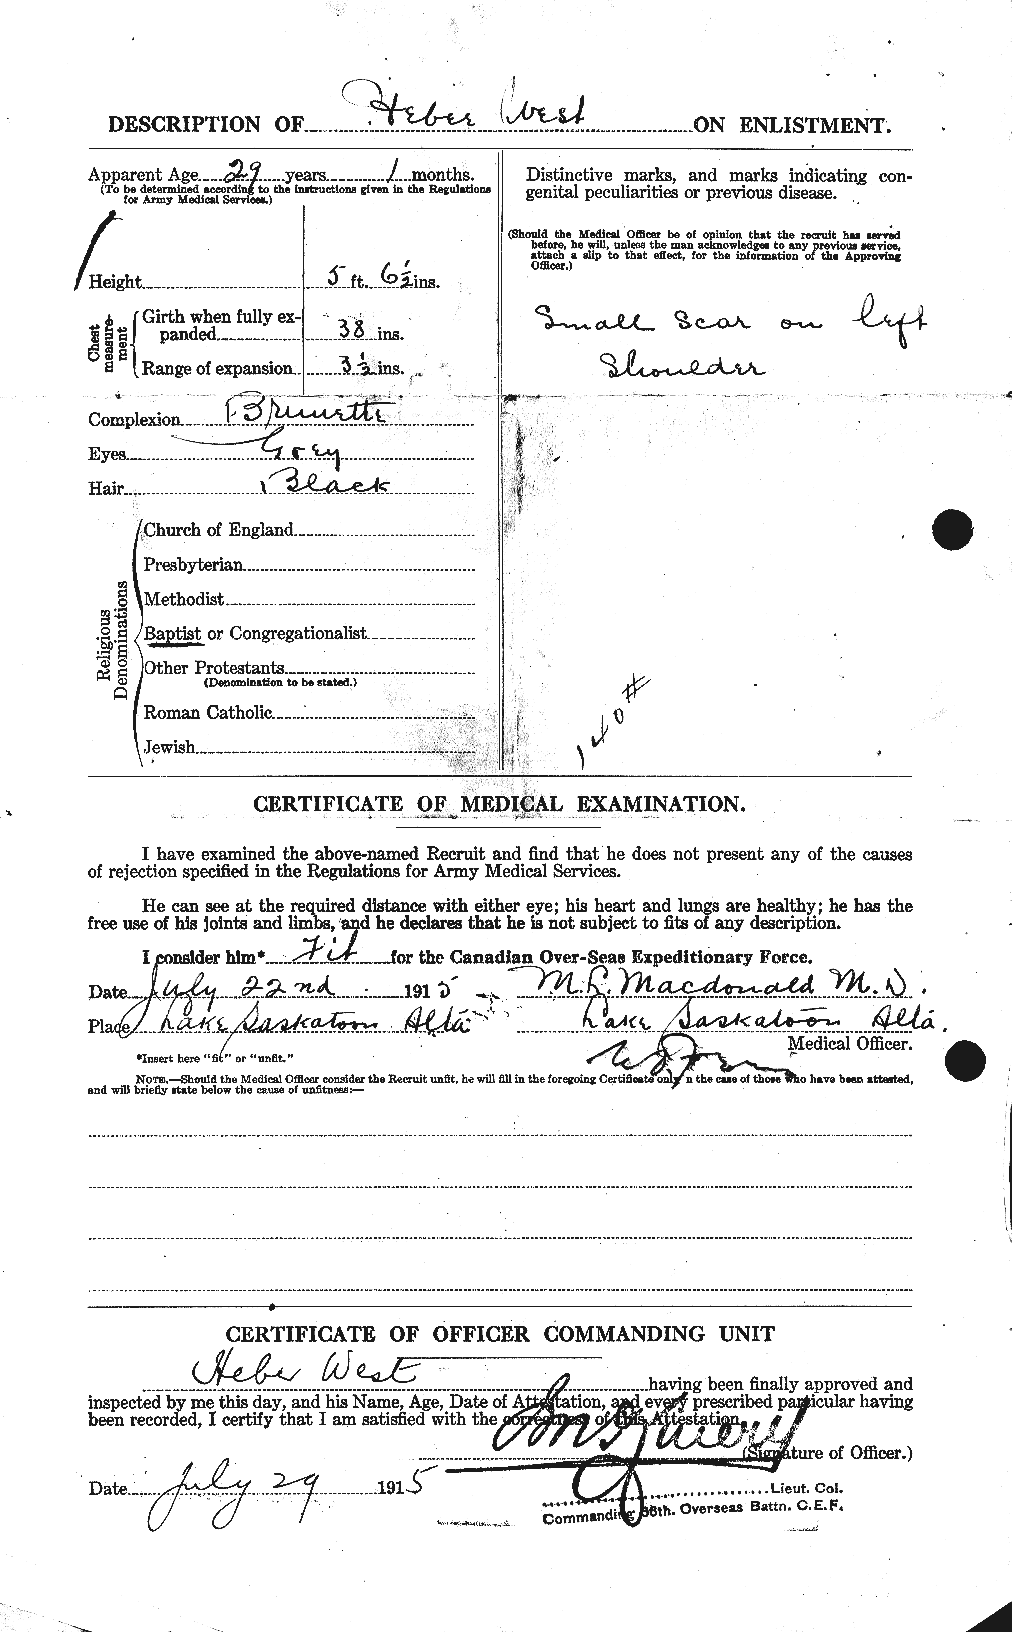 Dossiers du Personnel de la Première Guerre mondiale - CEC 666215b